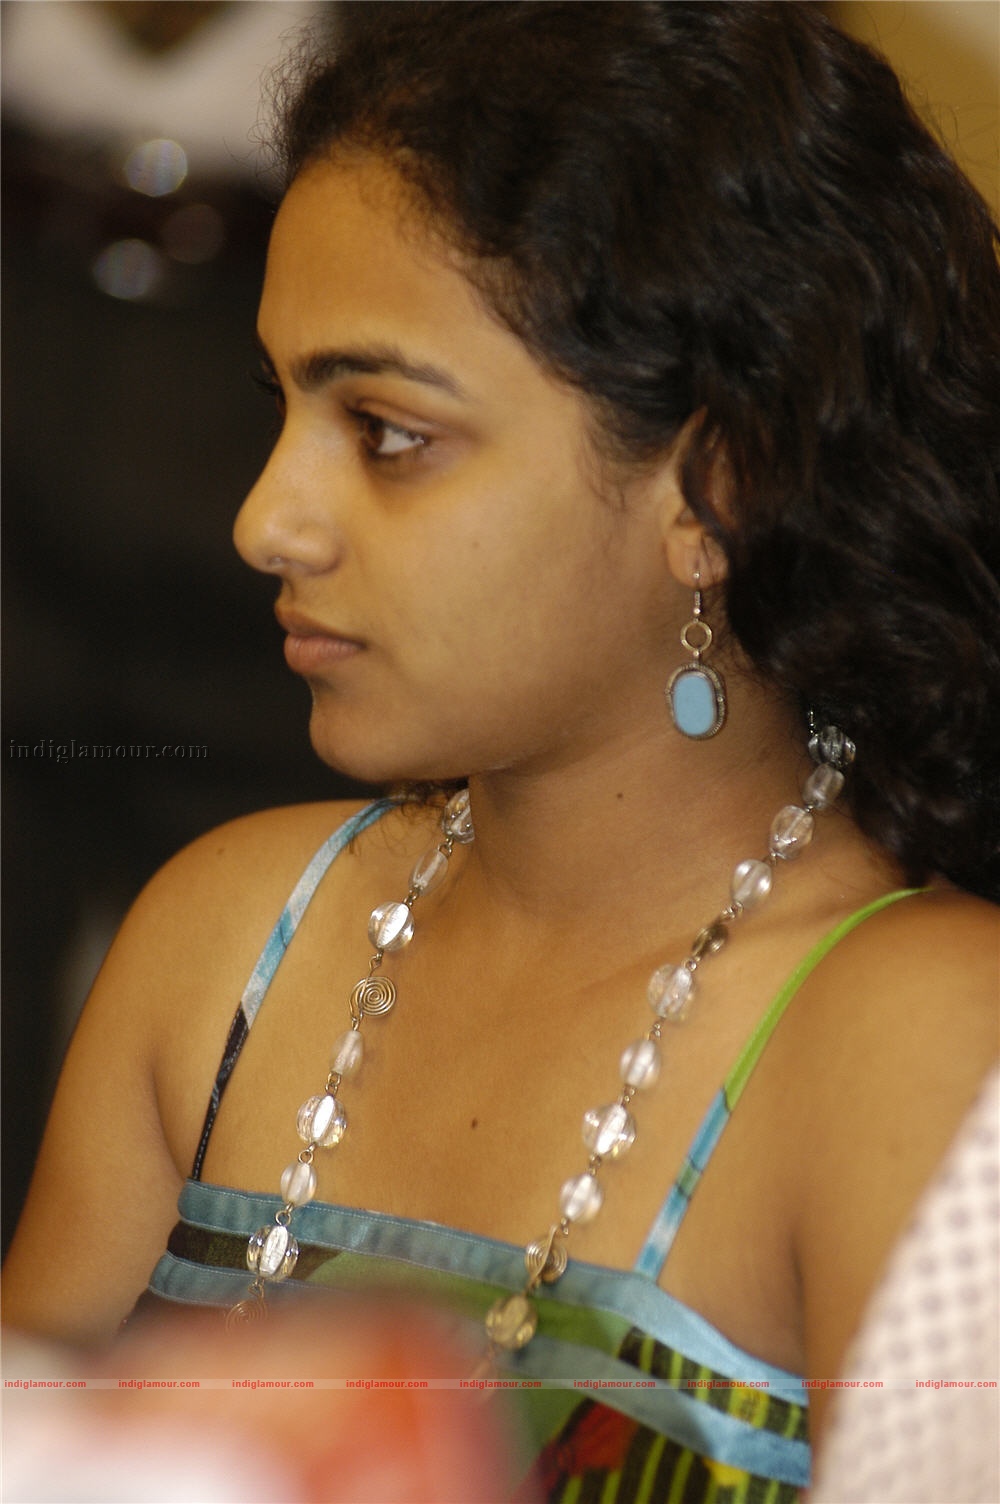 Nithya Menon Malayalam Actress Photo - Nitya Menon Hot Photos Hd - HD Wallpaper 